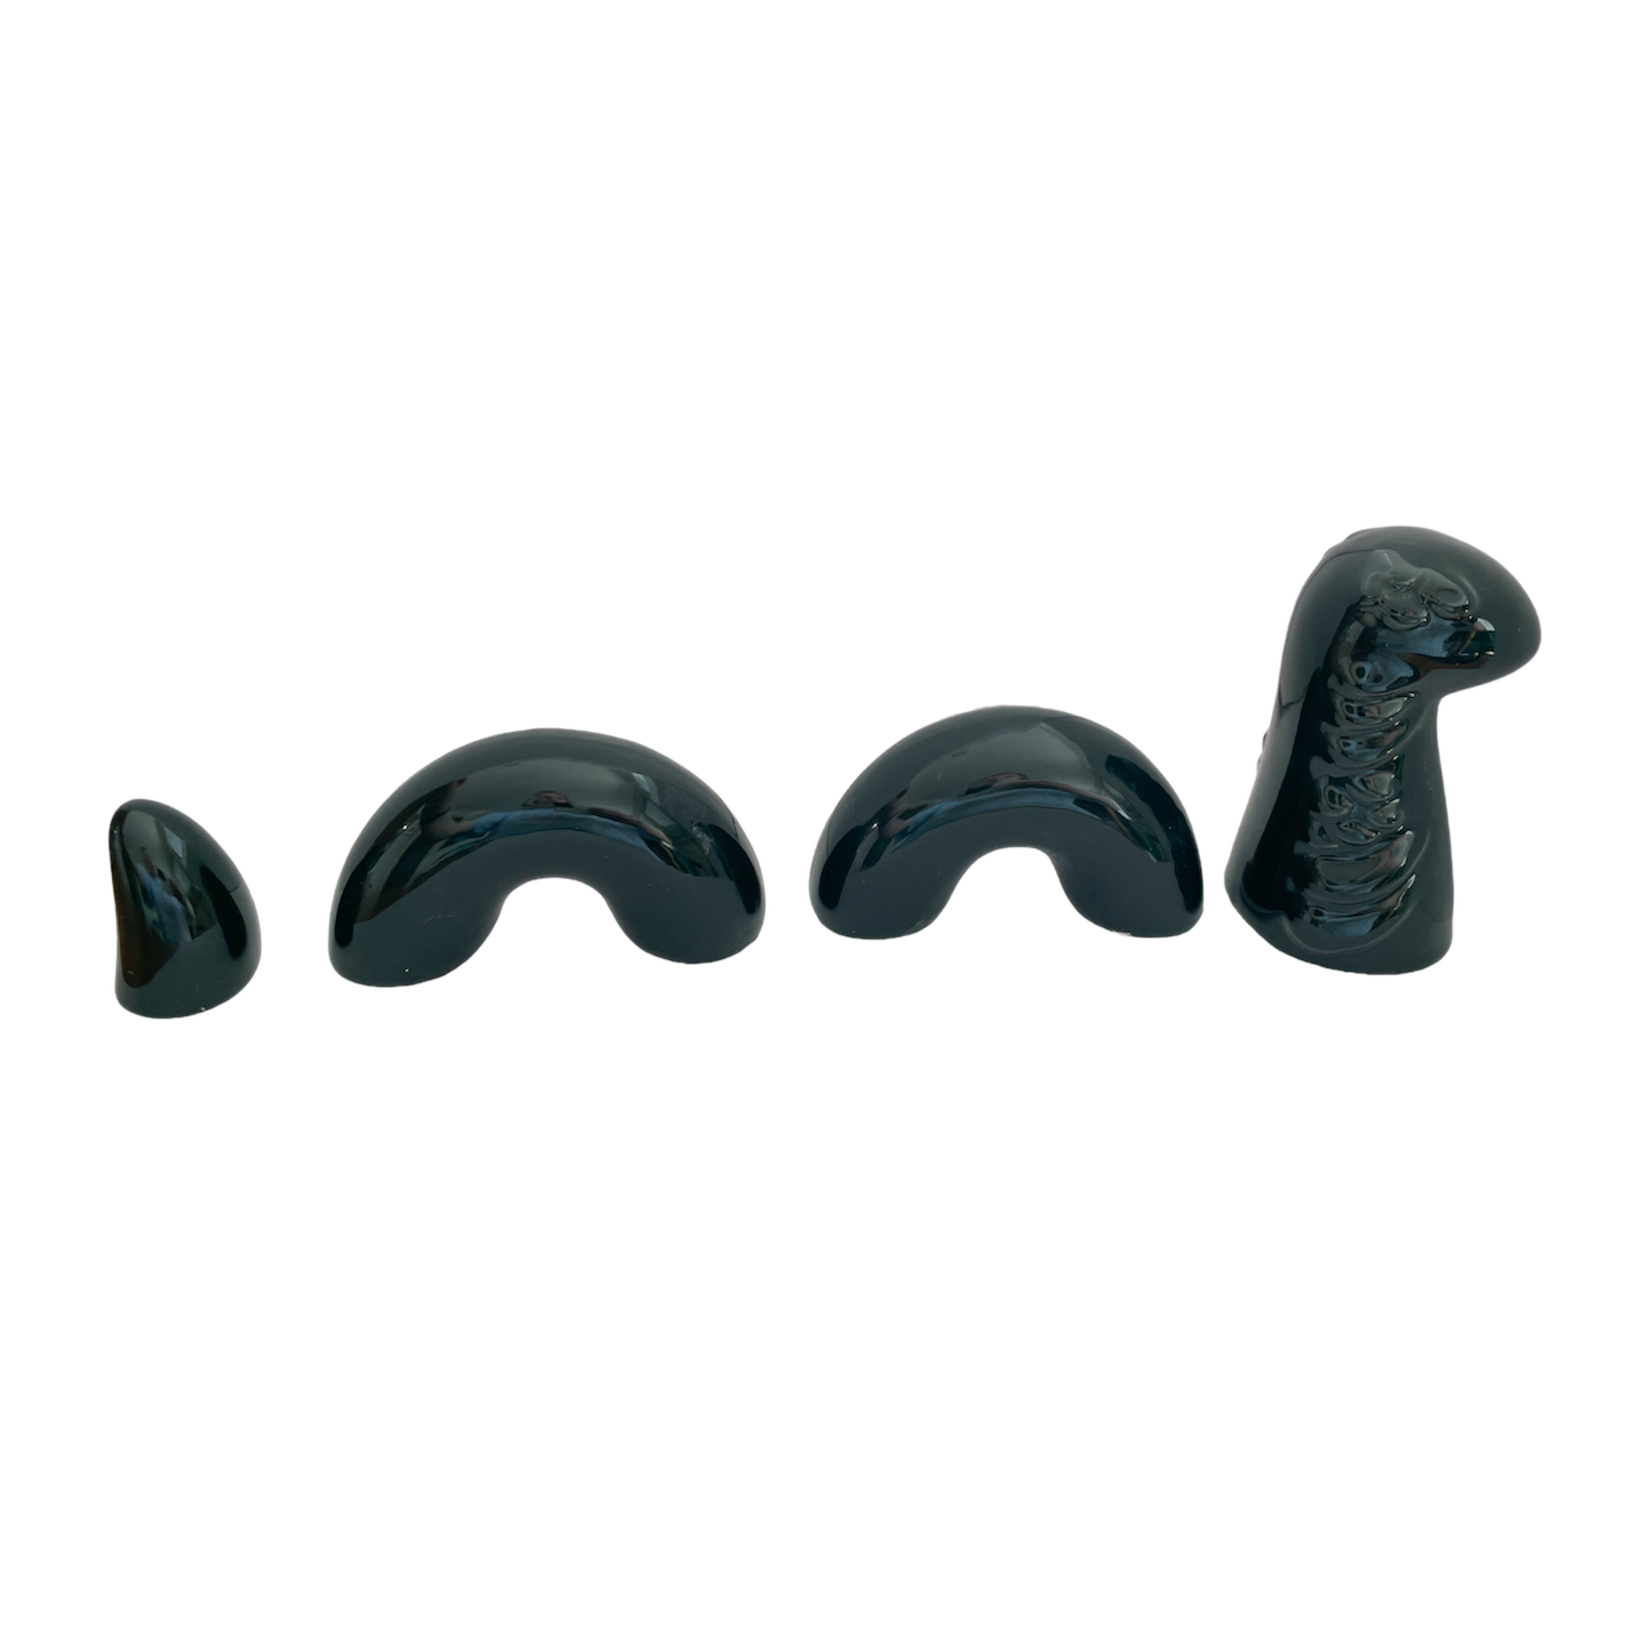 Ceramic Loch Ness Monster - Medium